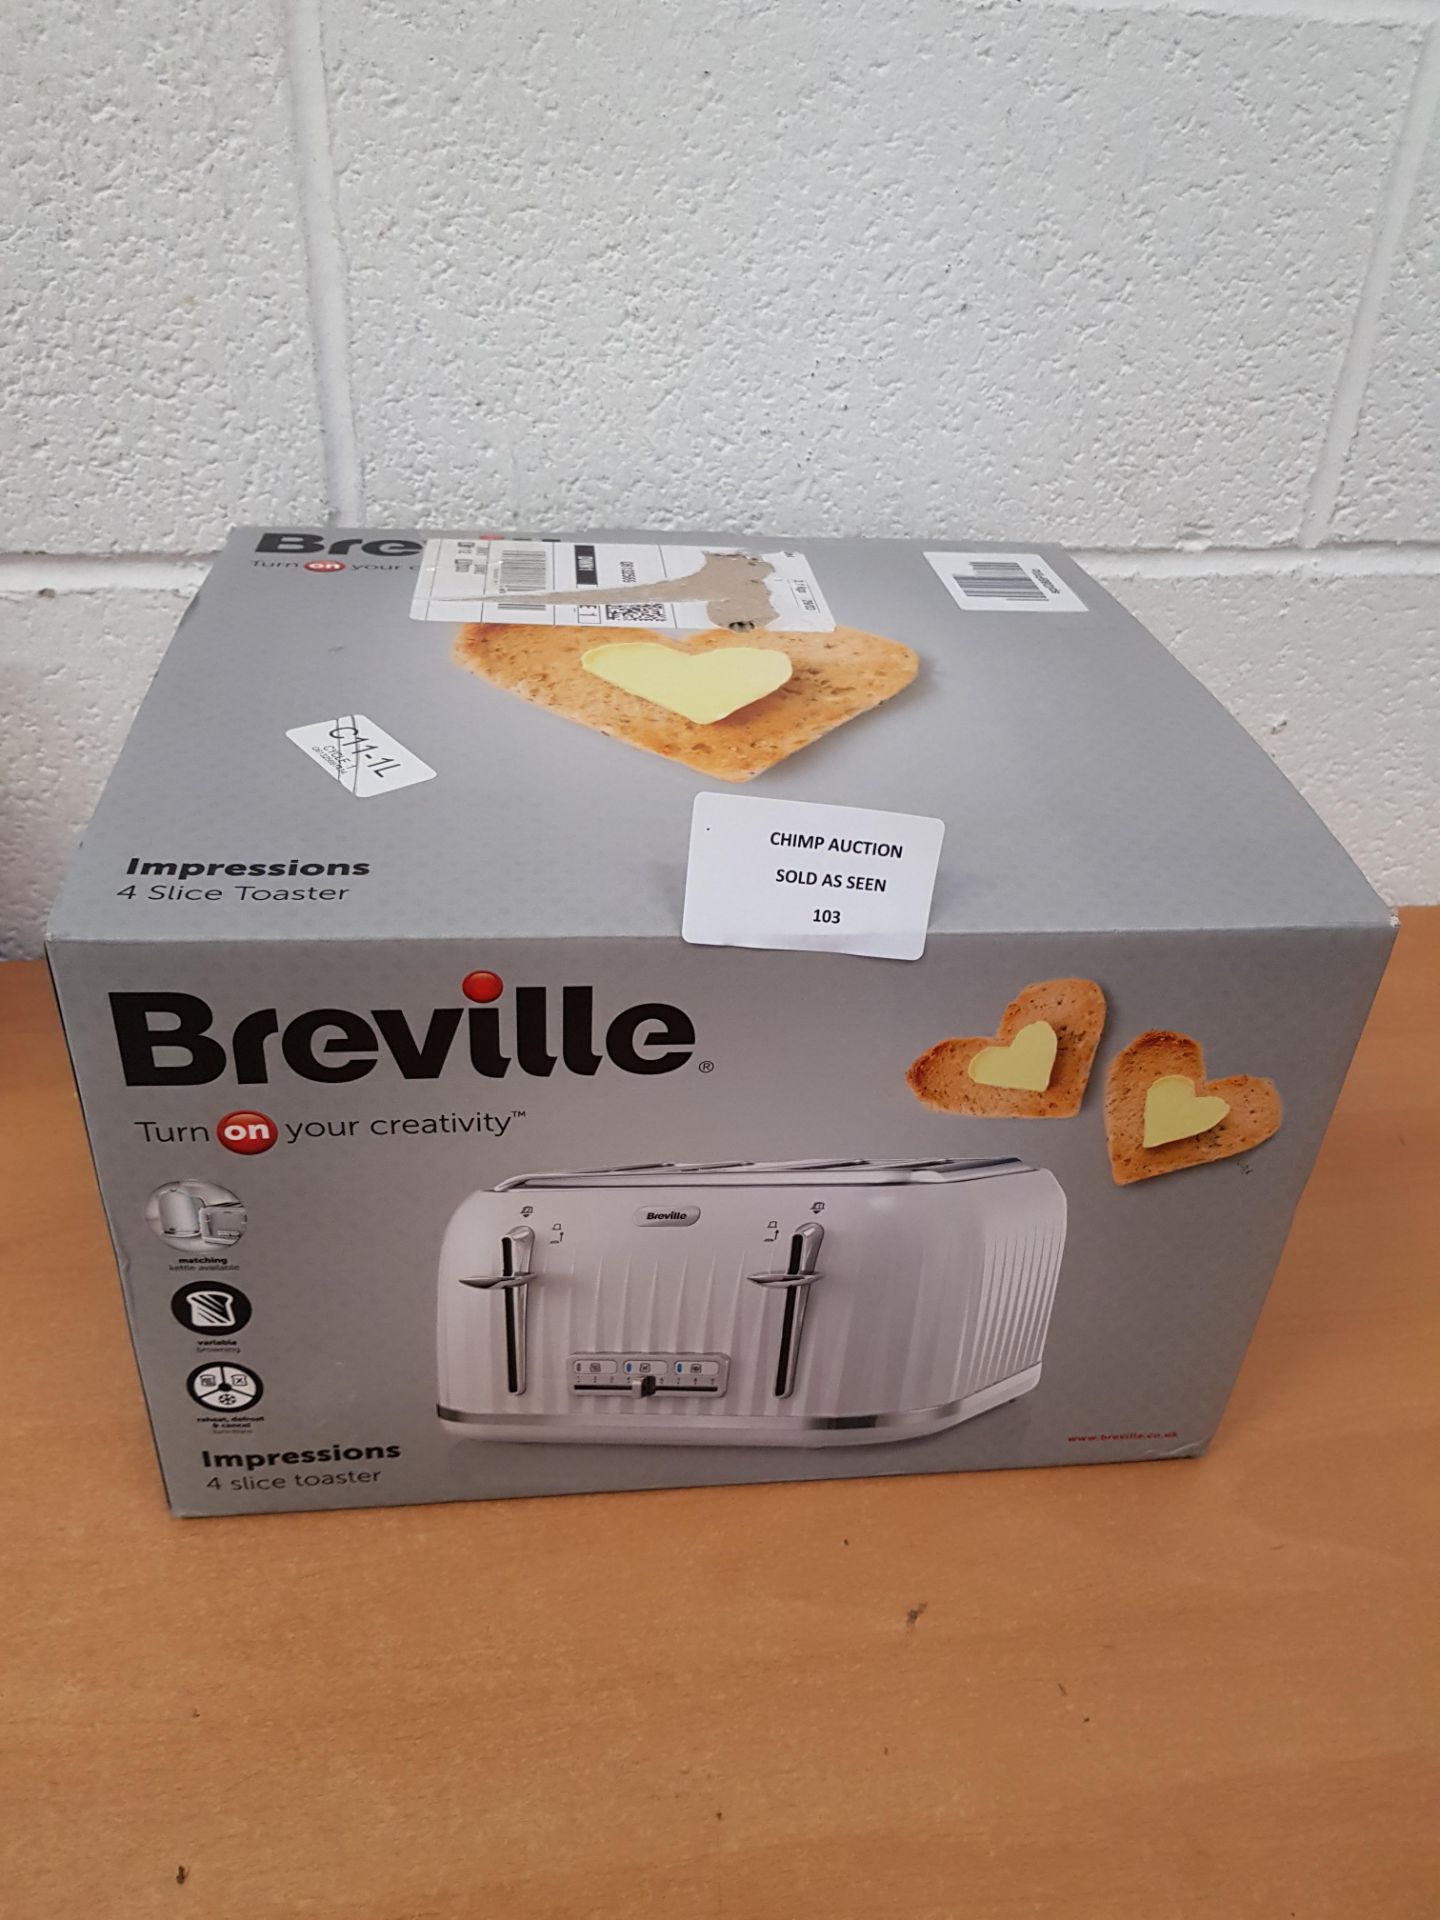 Breville Impressions 4 slice toaster